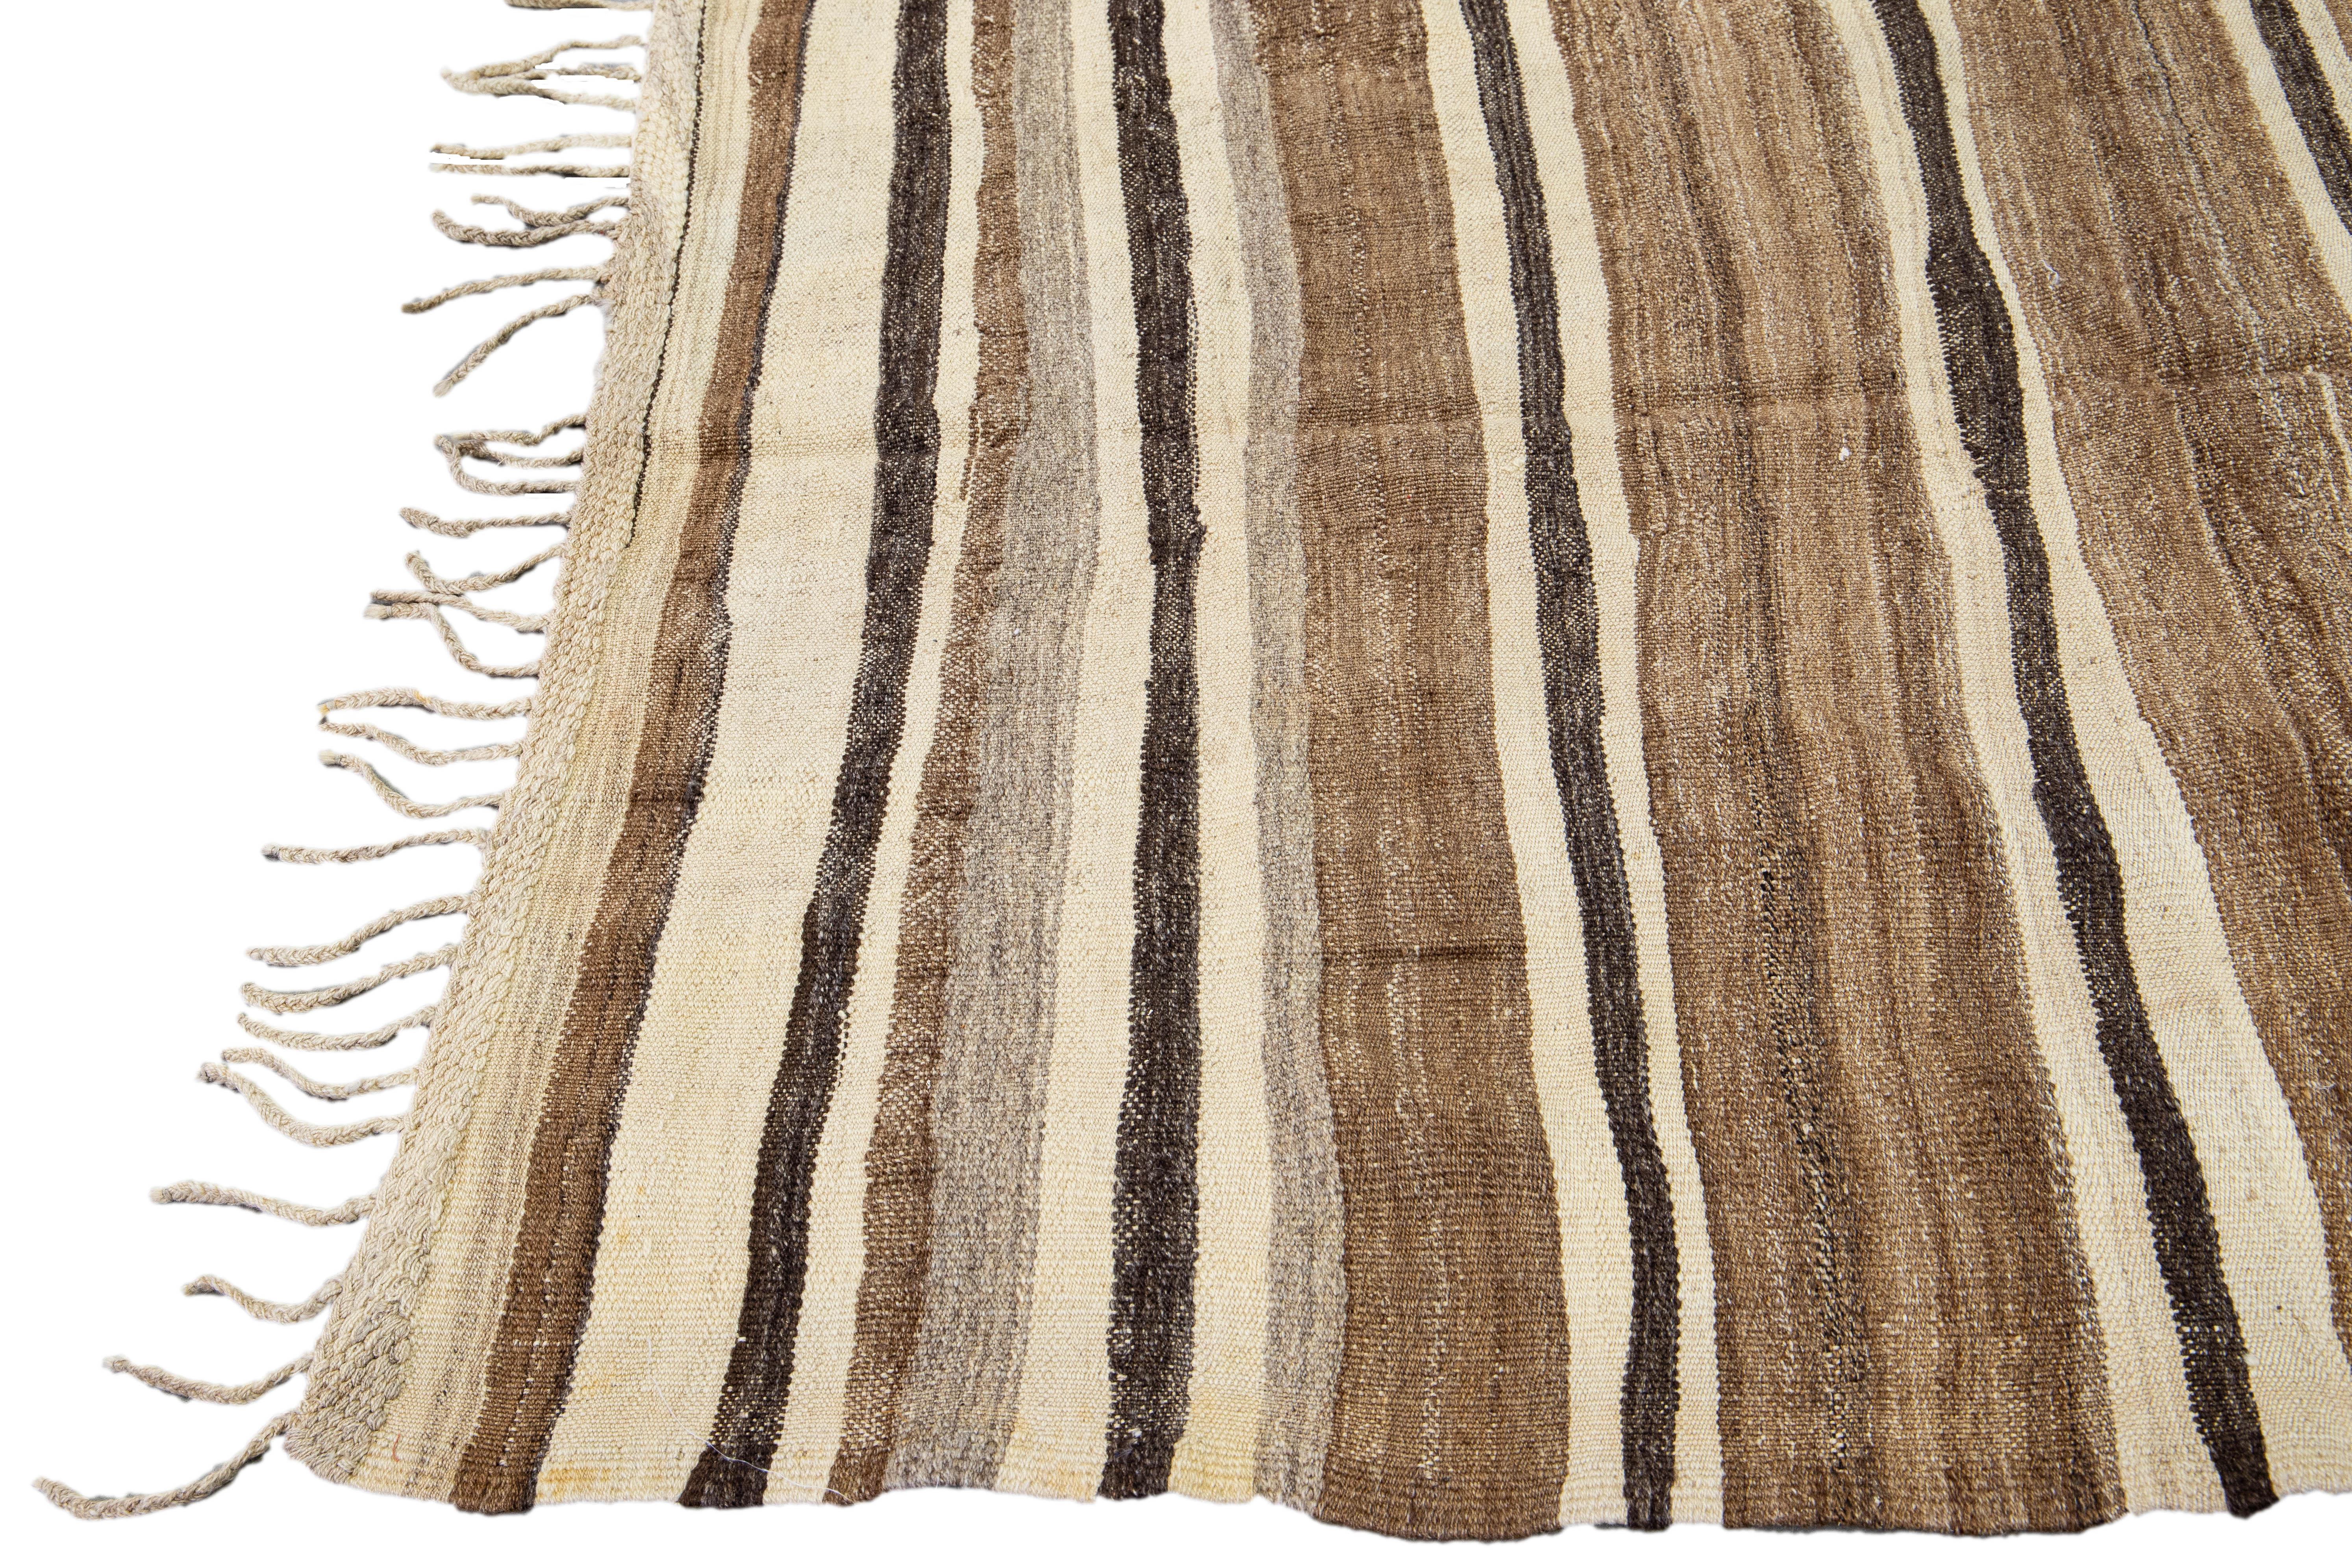 Hand-Knotted Brown Vintage Kilim Handmade Flatweave Striped Motif Wool Rug